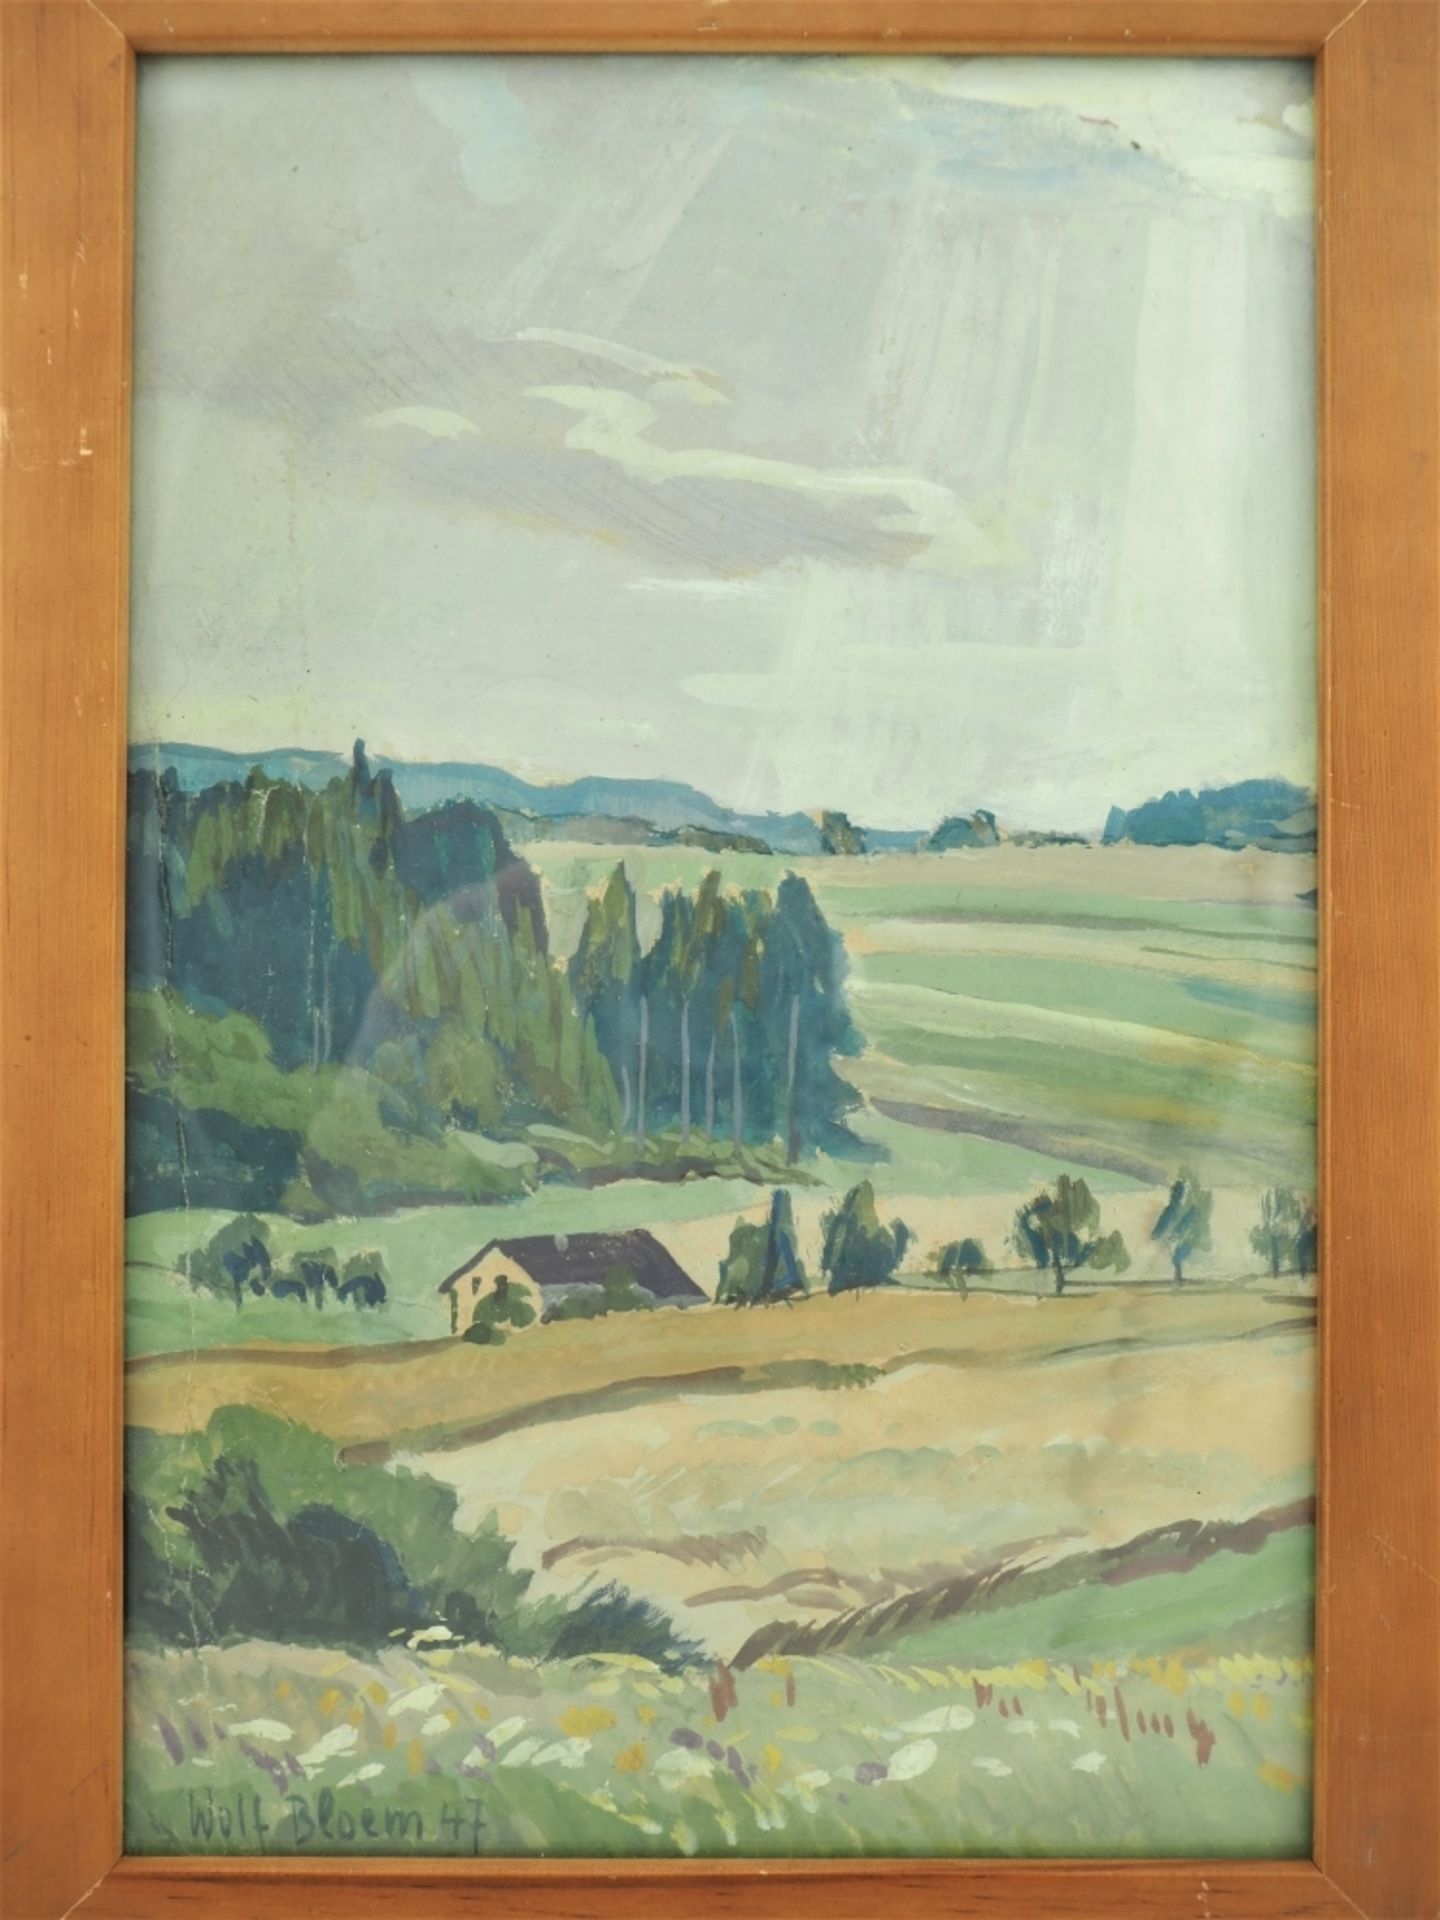 Wolf Bloem - Landschaft mit Feldern 1947